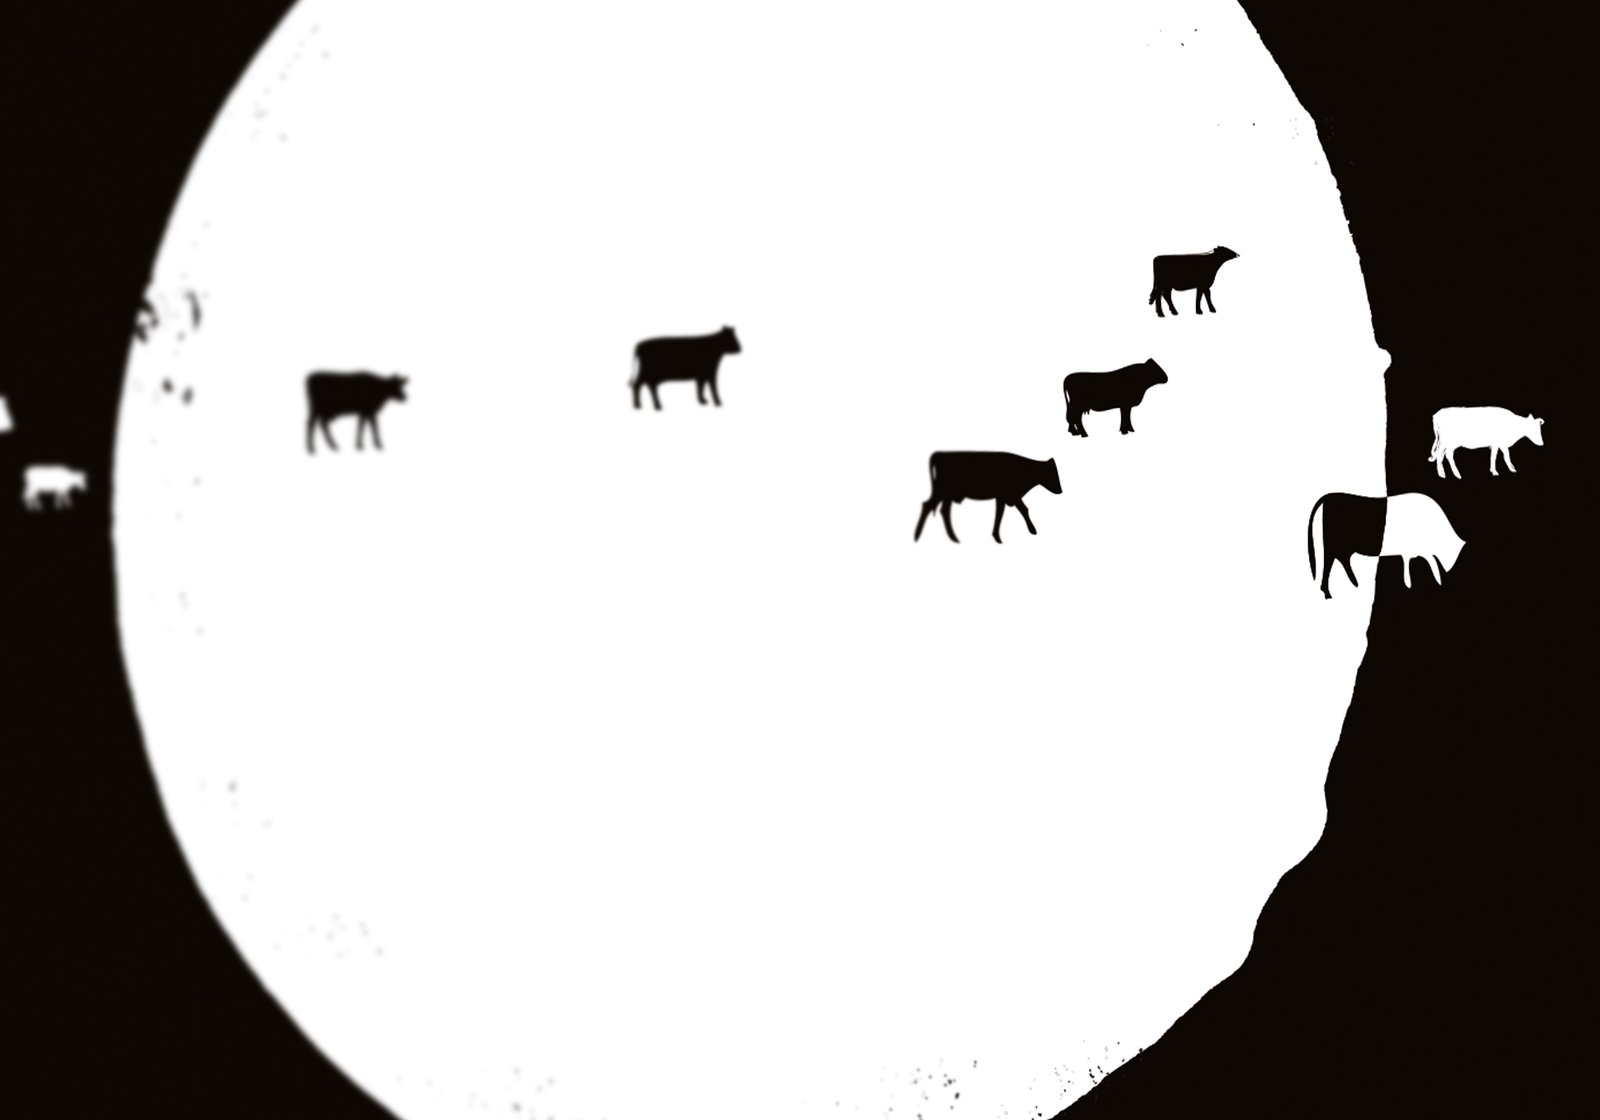 apocalypse cow pdf by michael logan